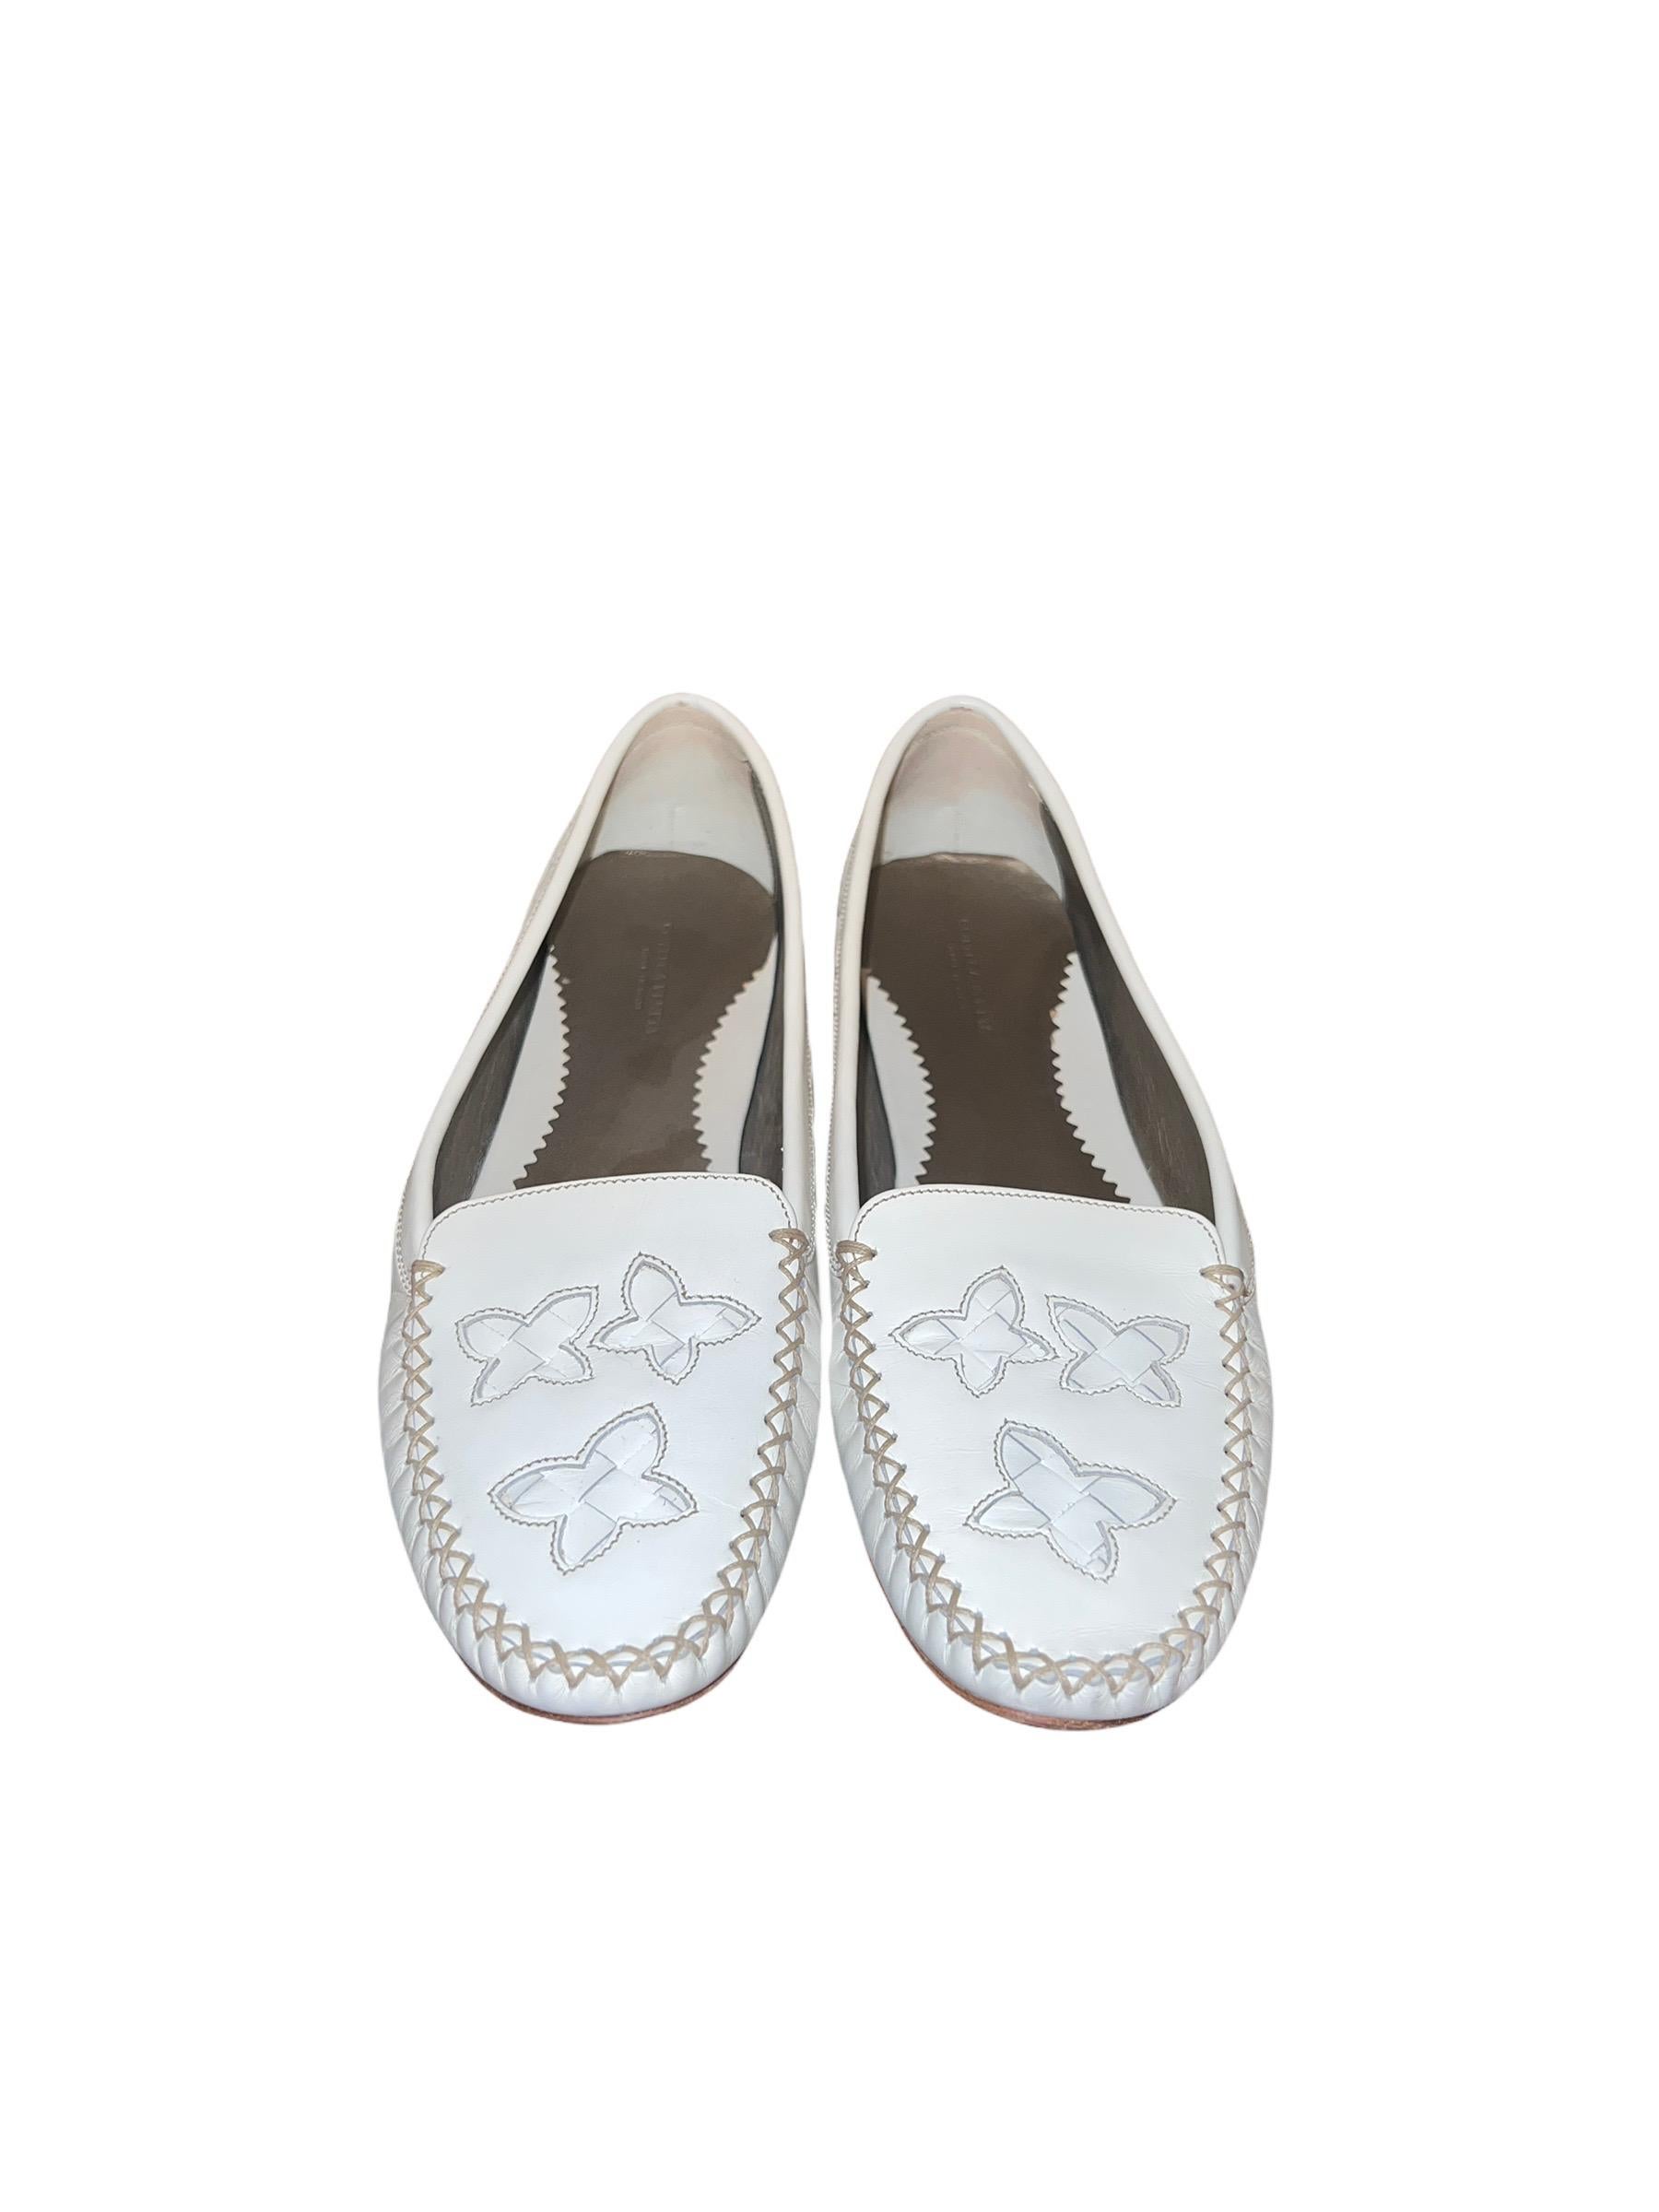 Women's UNWORN Bottega Veneta White Intrecciato Slipper Flats Loafers Moccassins 39